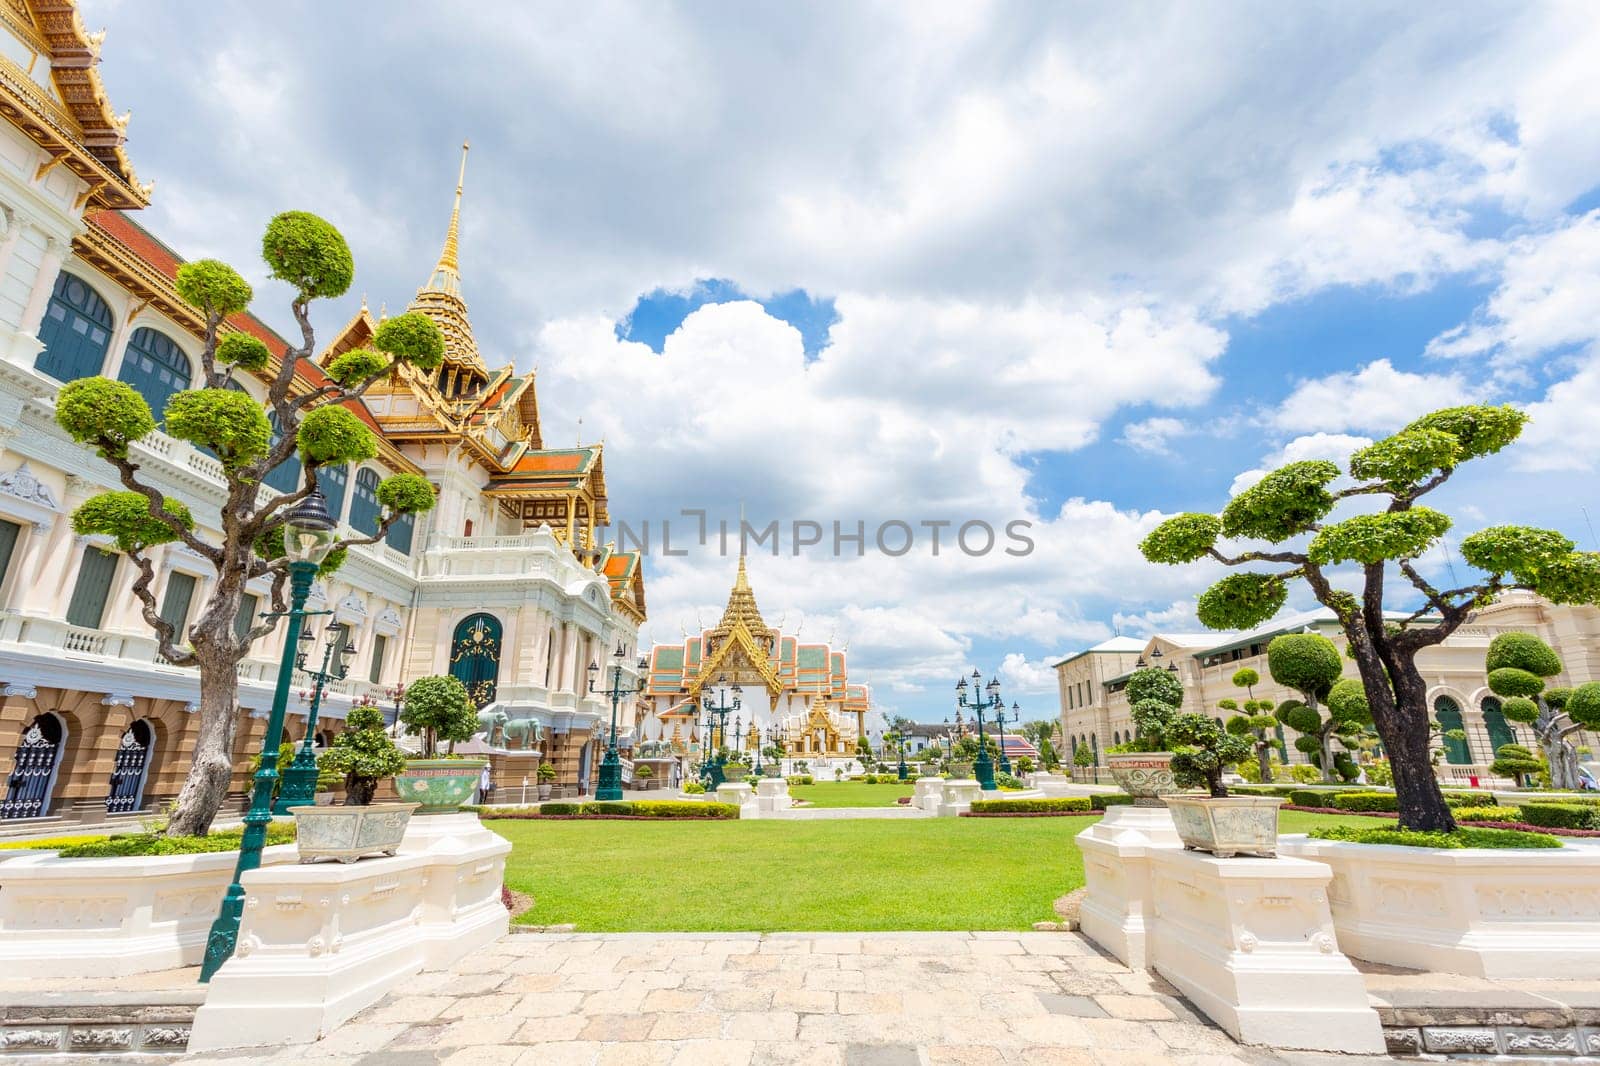 The Royal Palace in Bangkok, Thailand by Gamjai